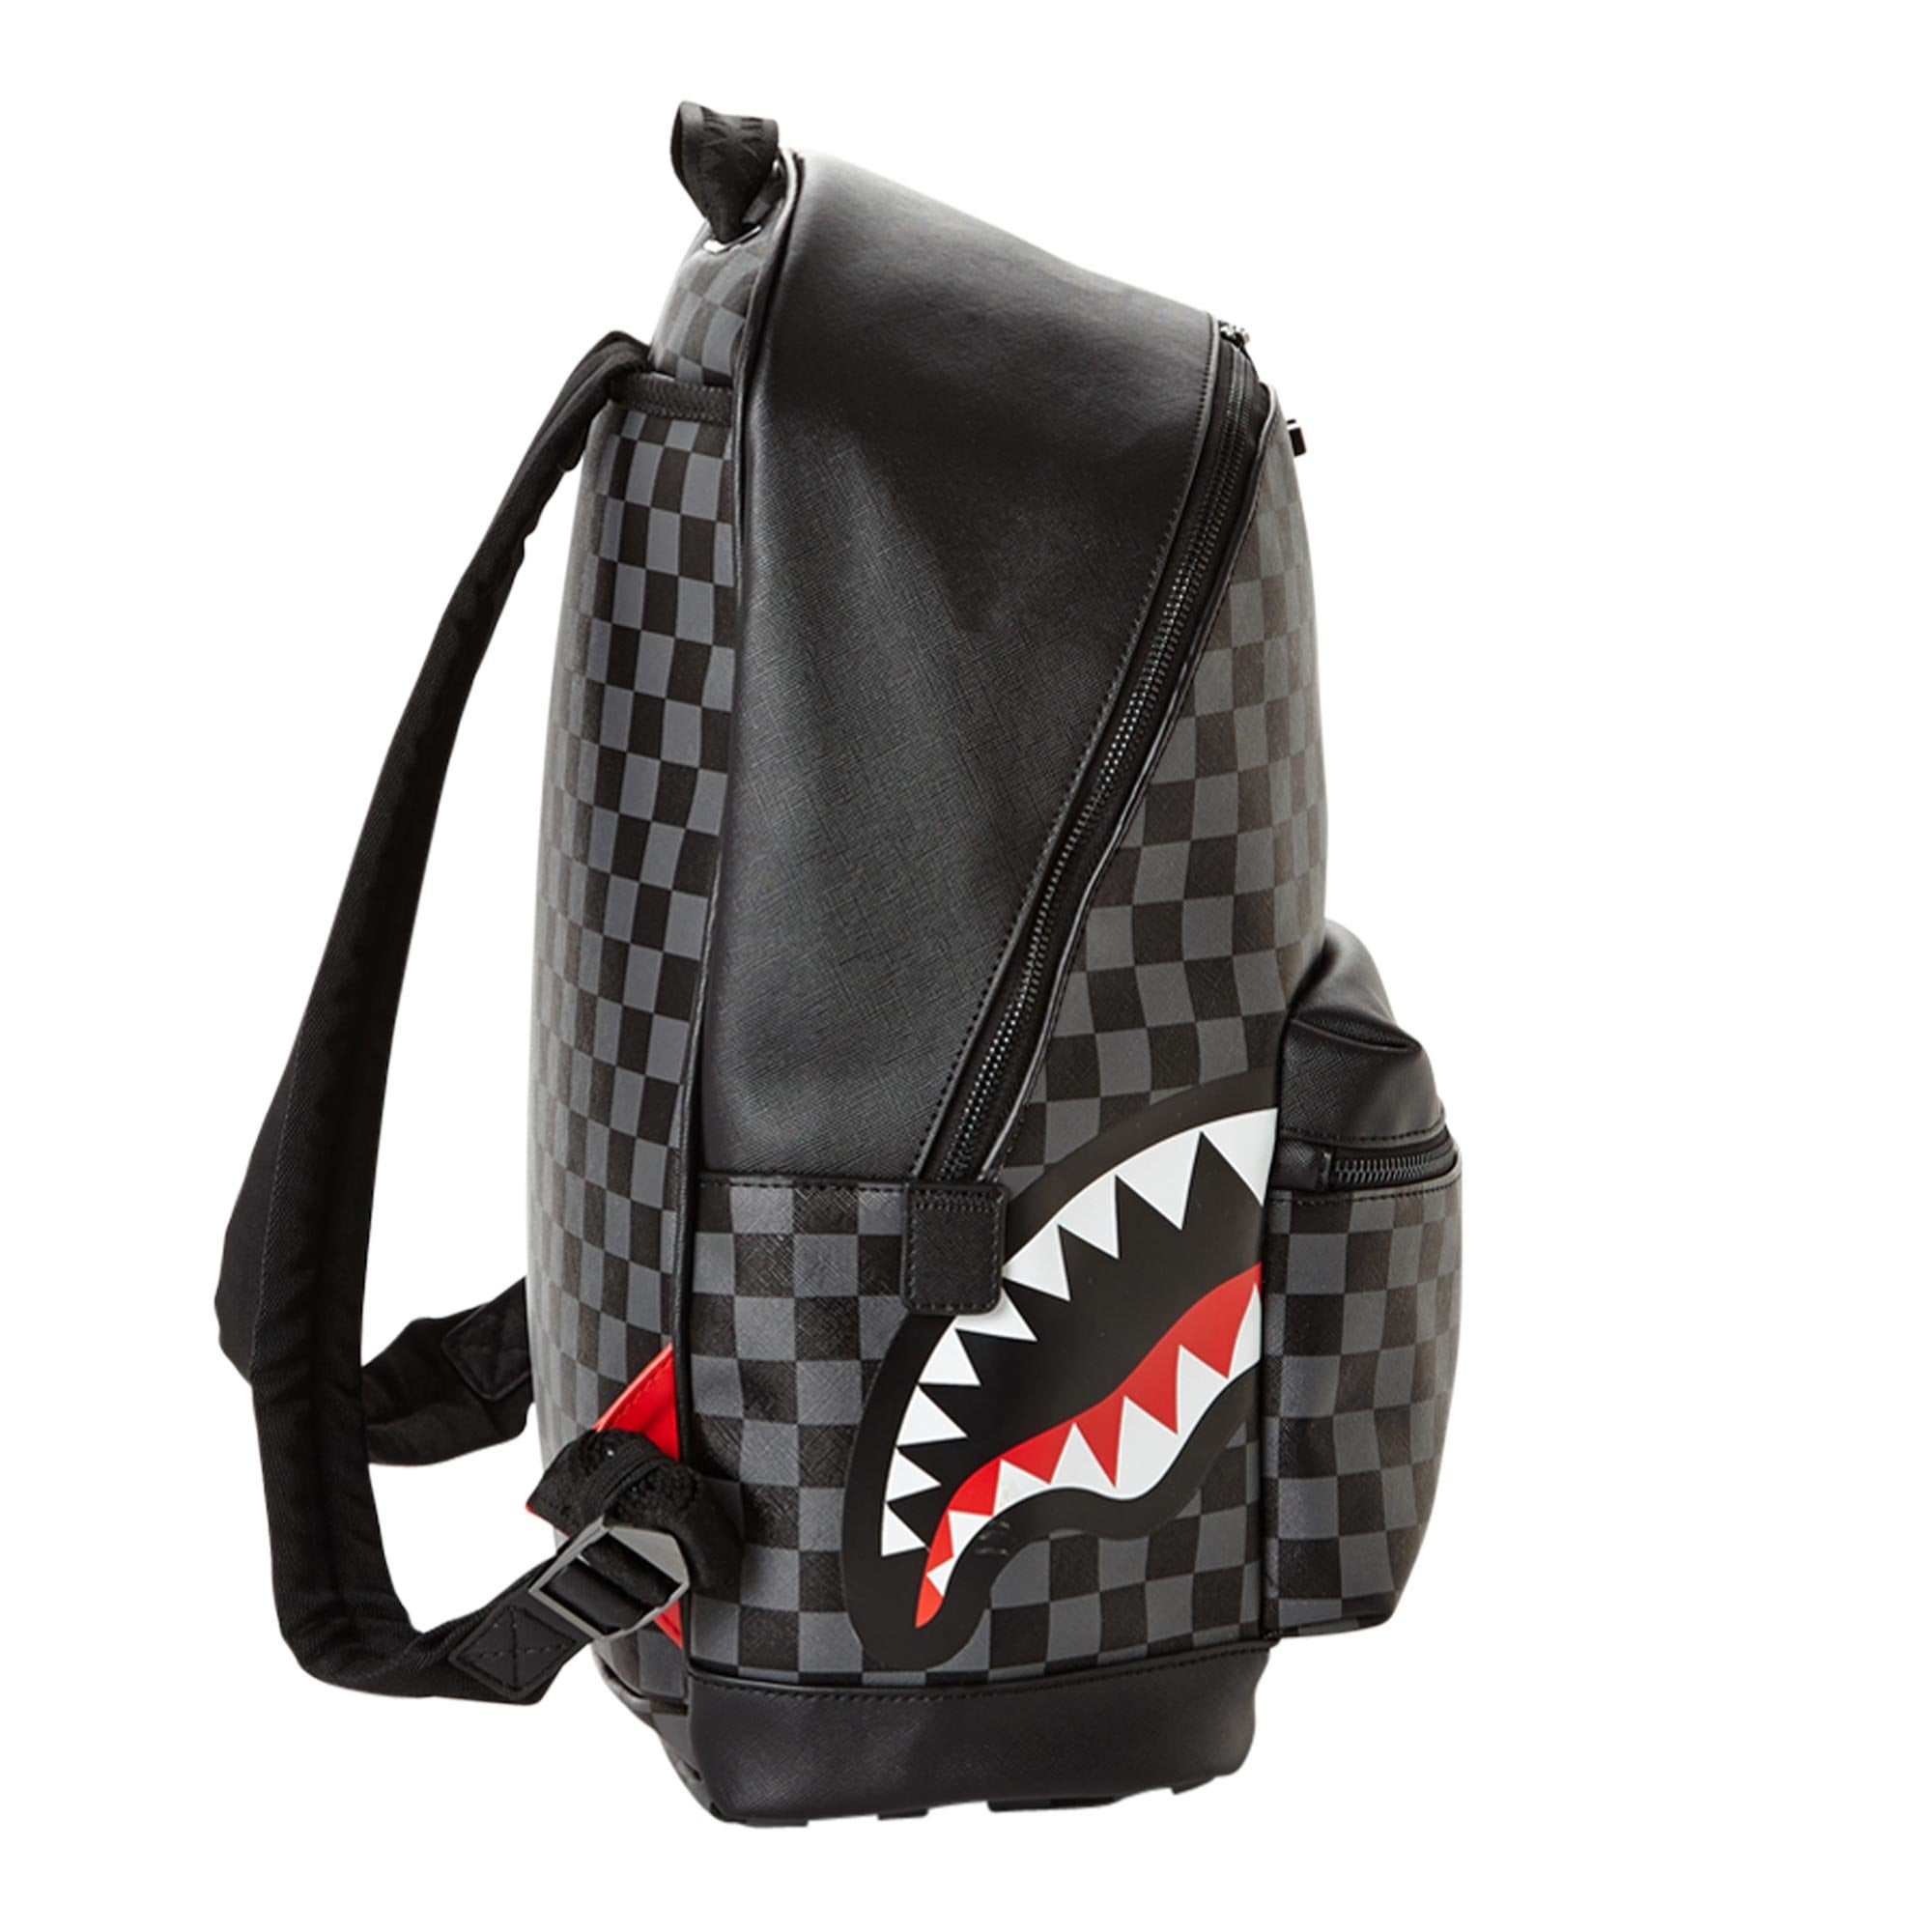 Sprayground Sip Side Sharks Backpack - ShopStyle